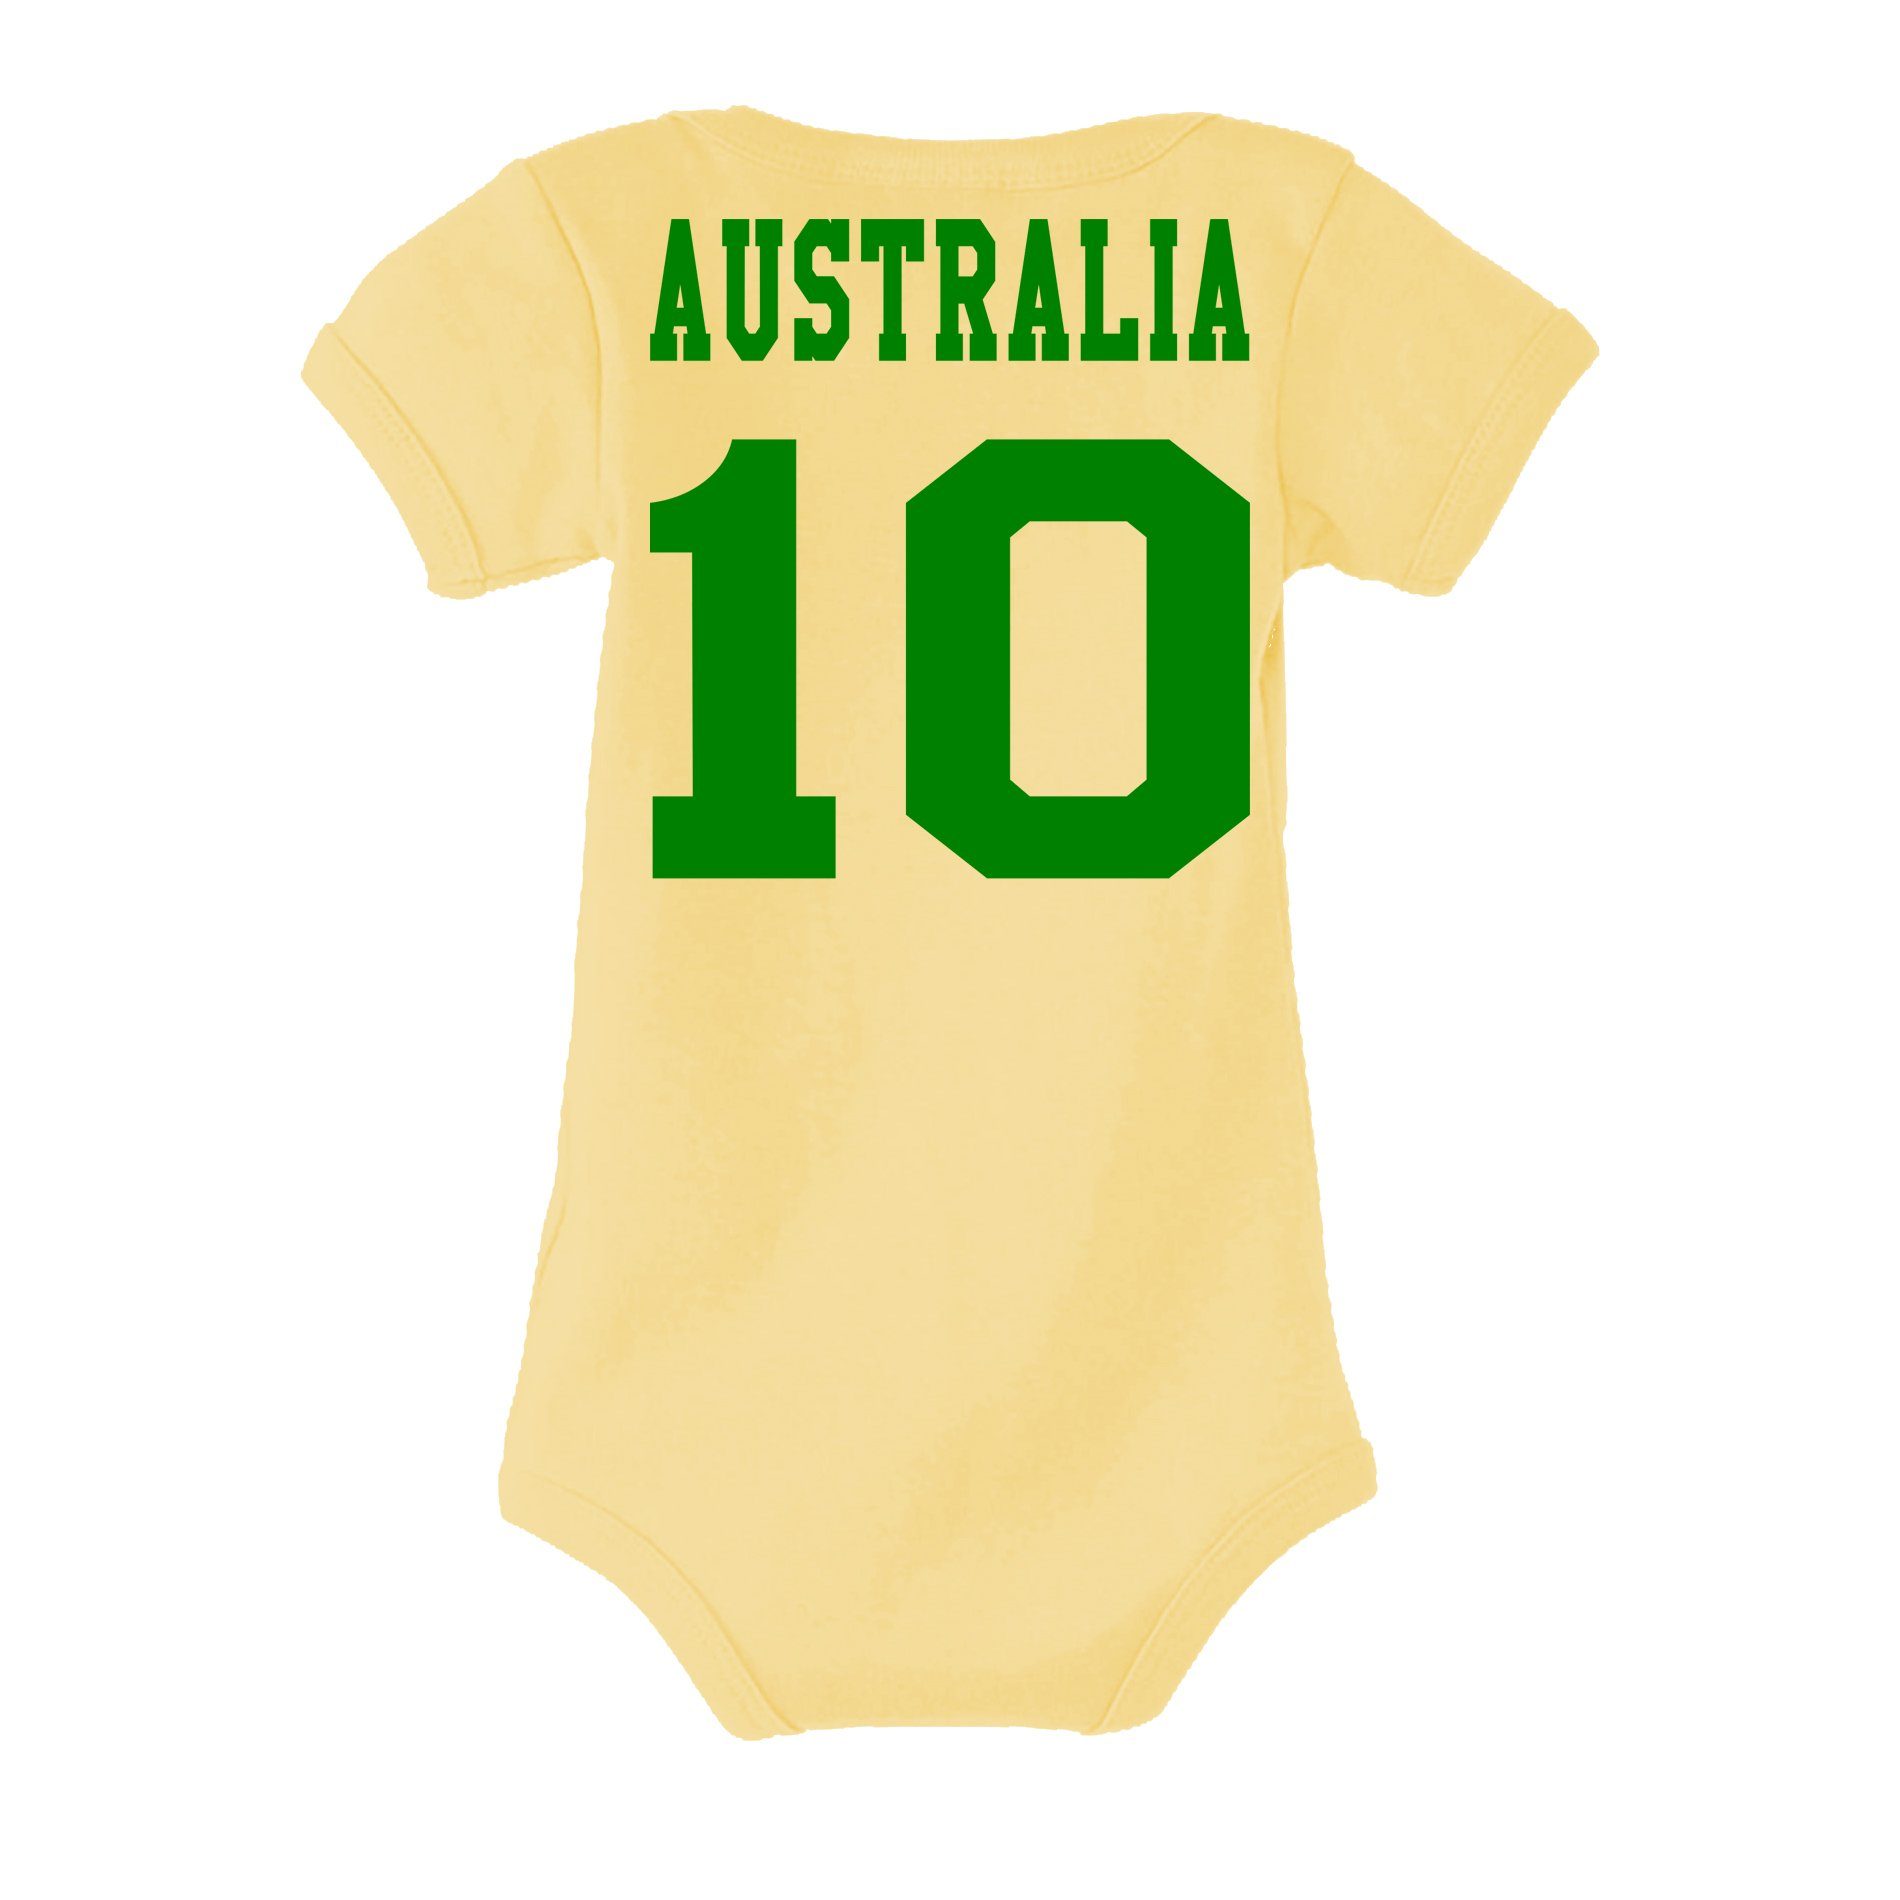 Meister Sport Brownie Baby & Australien Weltmeister Kinder Fußball Blondie Strampler Trikot WM